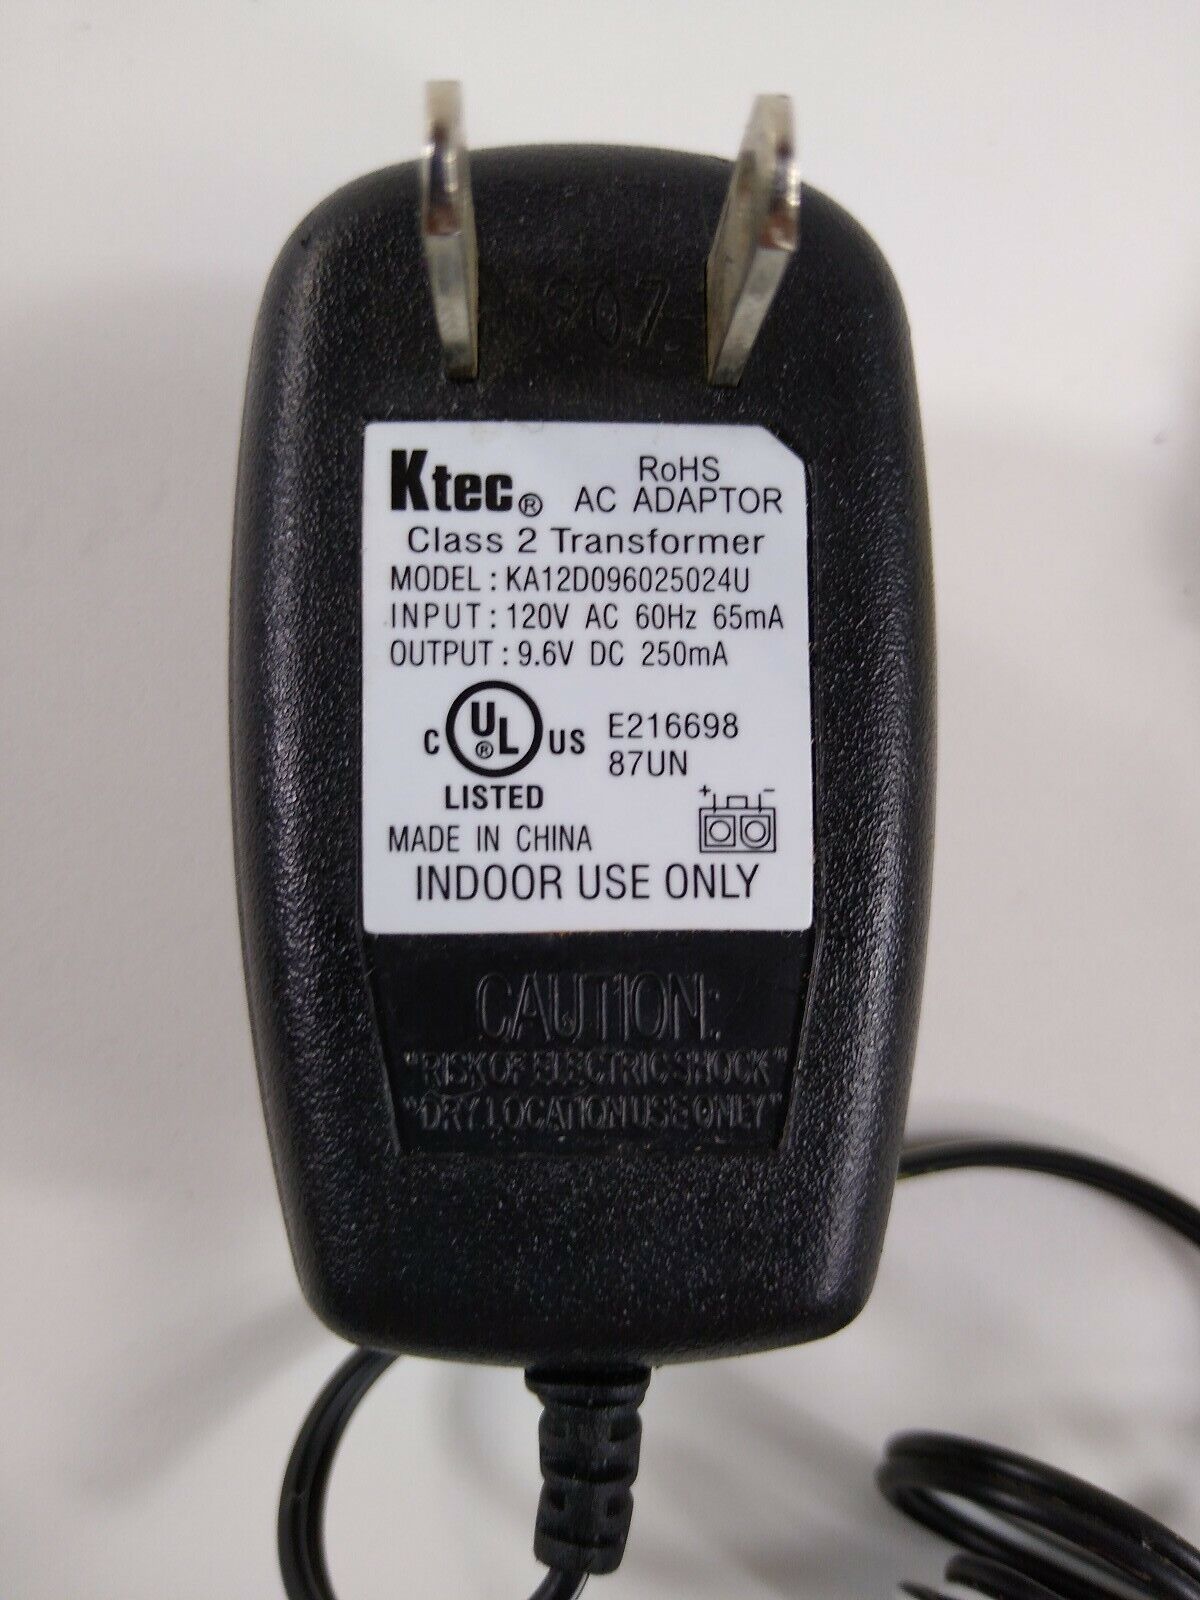 *Brand NEW* Ktec KA12D096025024U 9.6VDC 250mA 65mA AC Adapter Power Supply